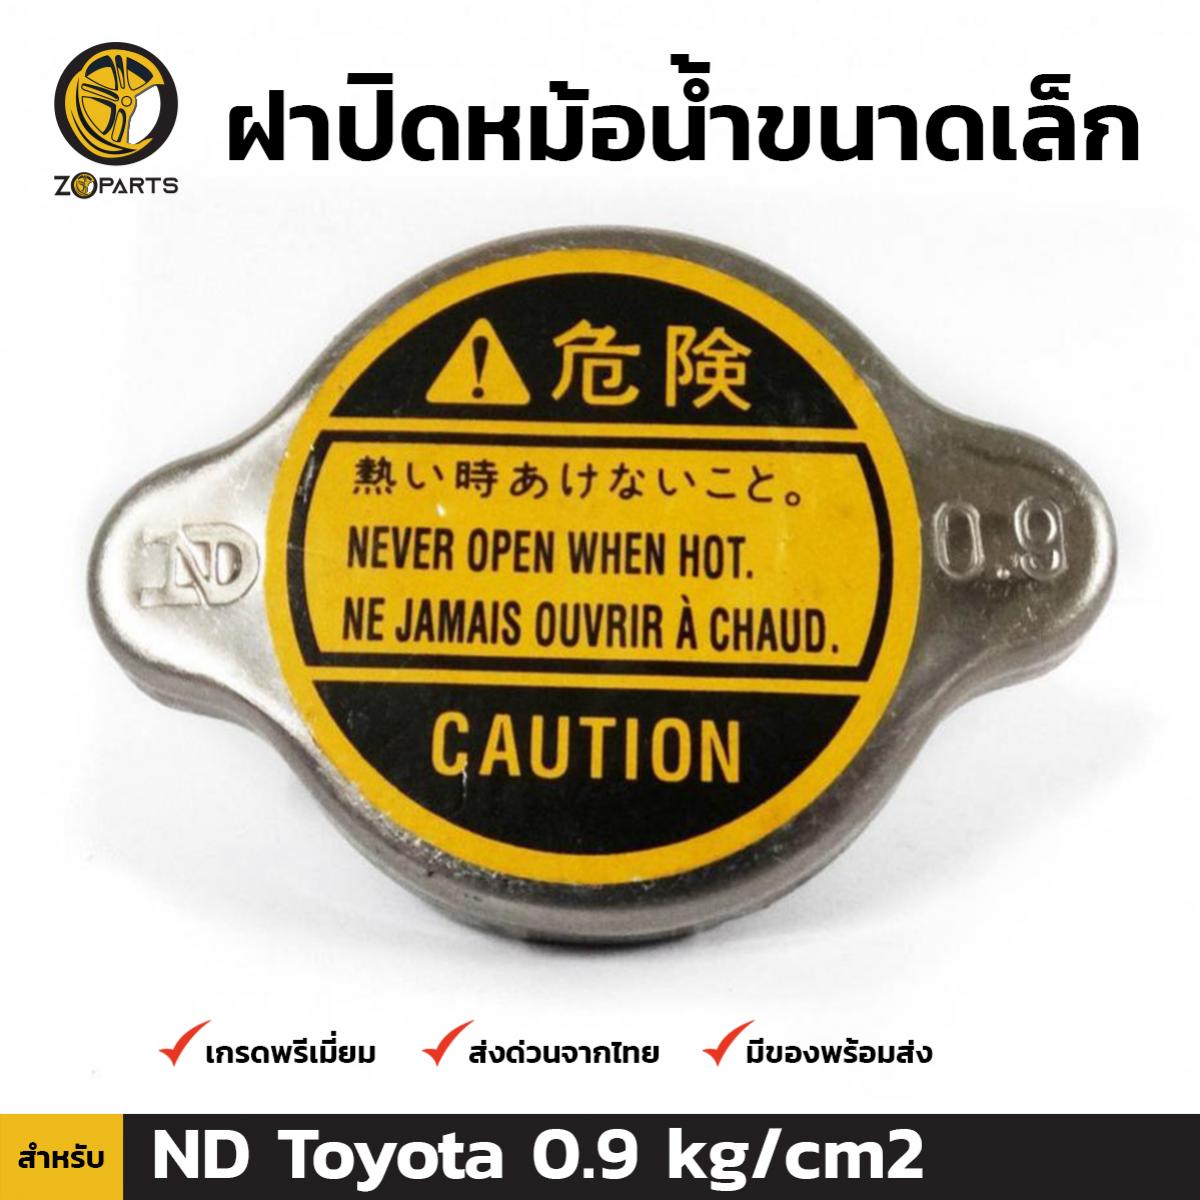 ฝาปิดหม้อน้ำ สำหรับ Toyota (Small) ND 0.9 kg/cm2 โตโยต้า